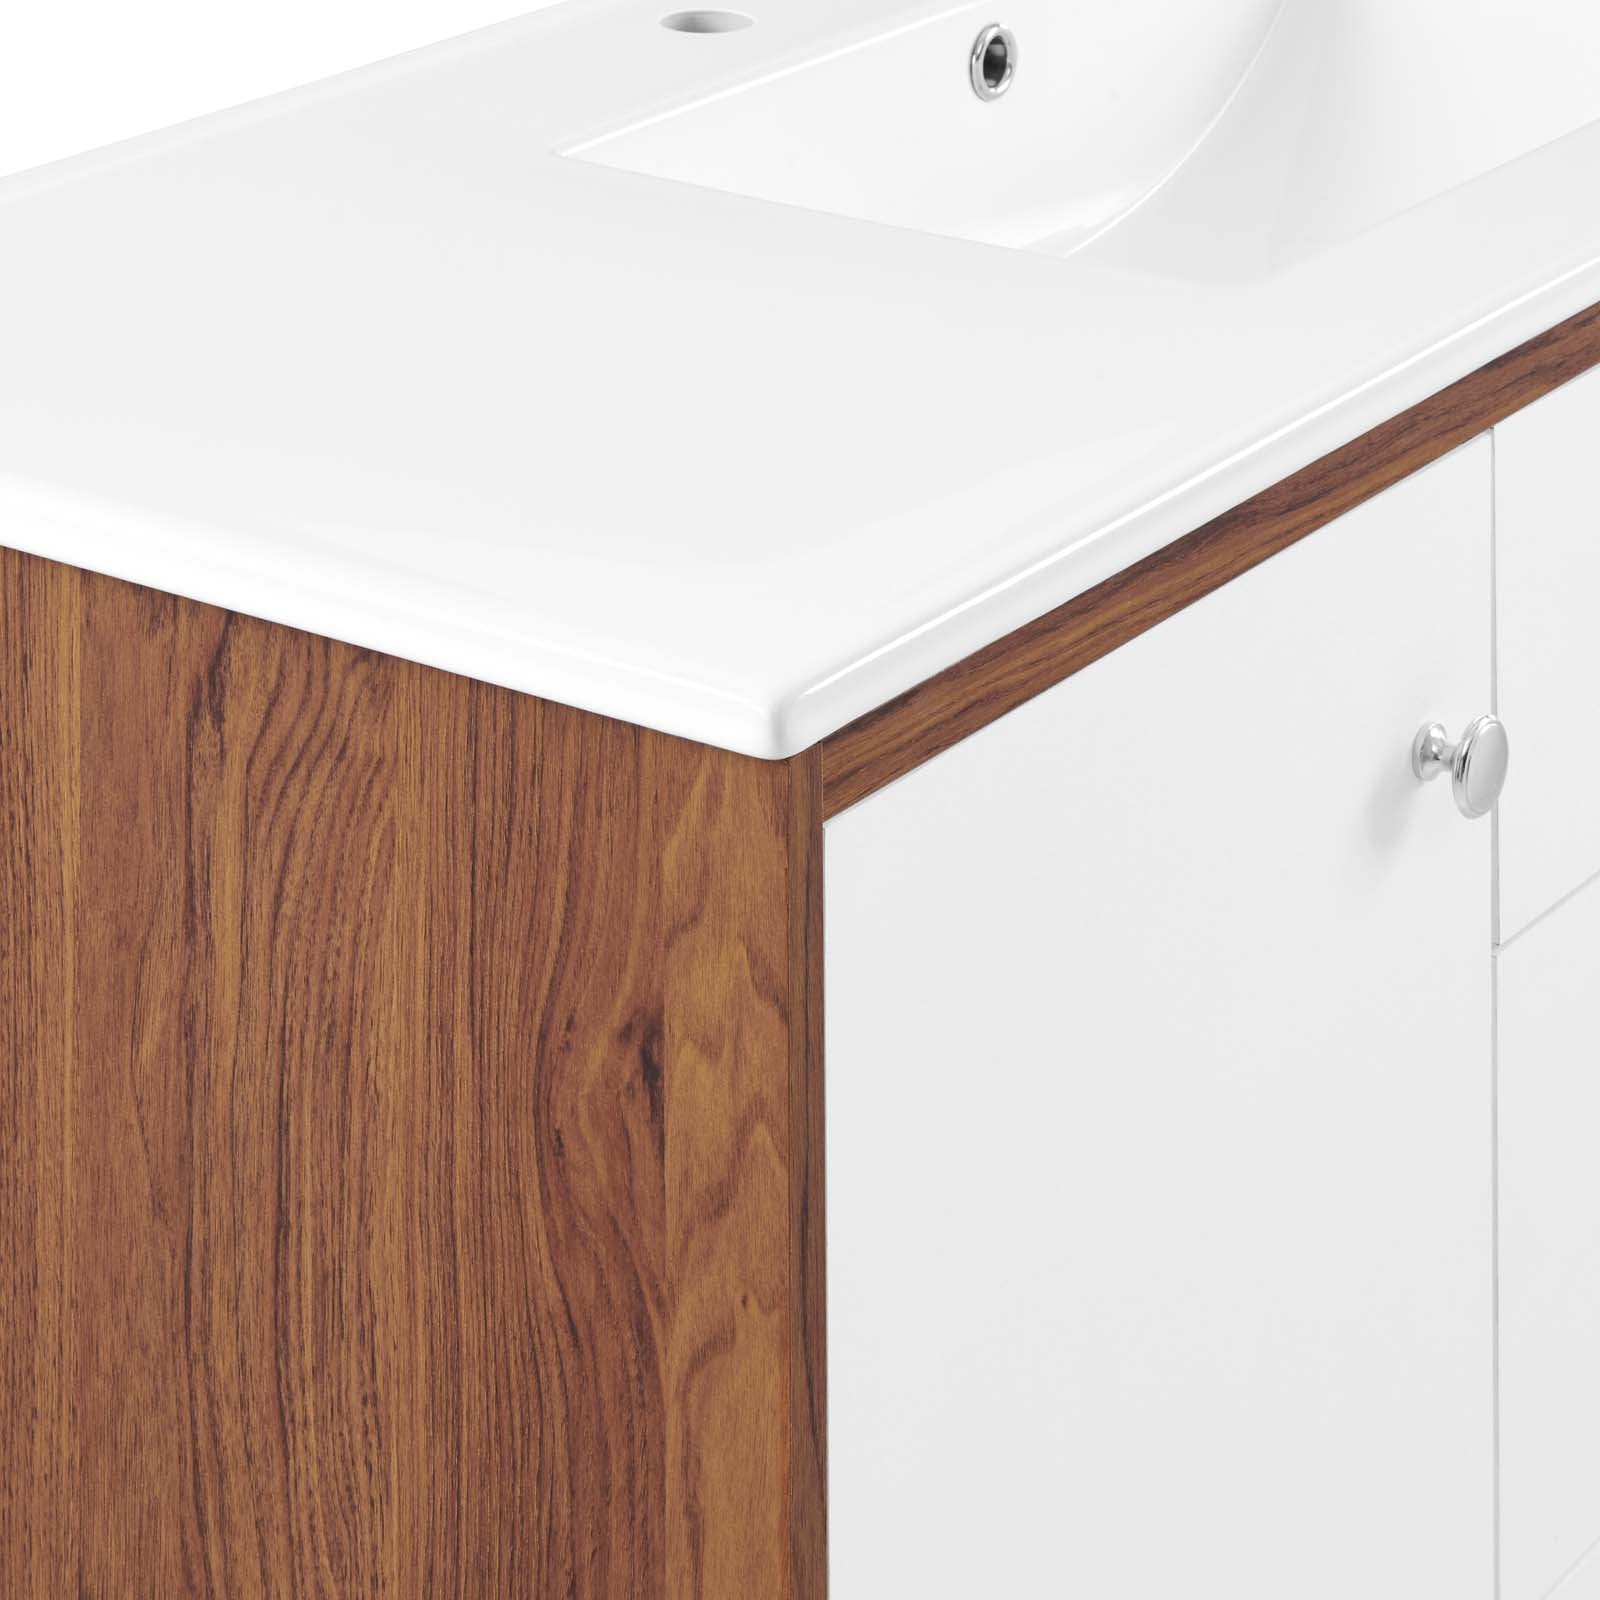 Transmit 48" Single Sink Bathroom Vanity - East Shore Modern Home Furnishings